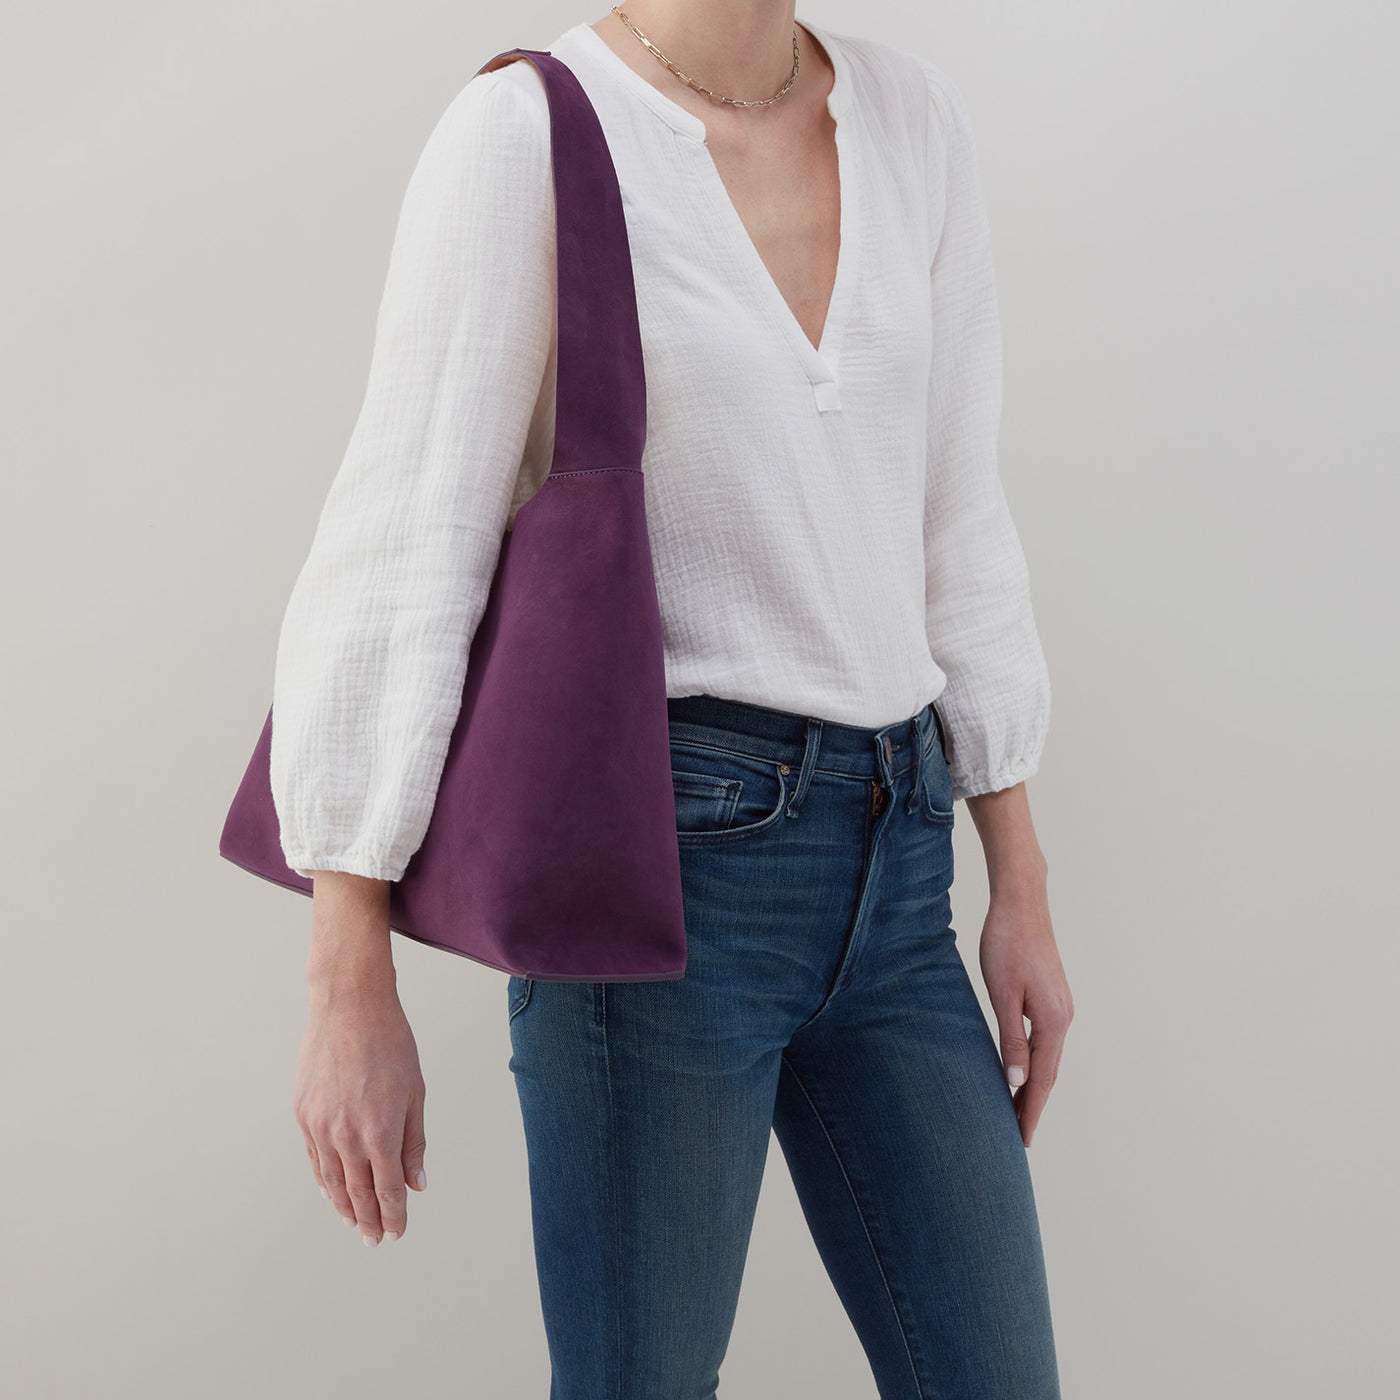 Joni Large Shoulder Bag in Bonded Suede - Viola